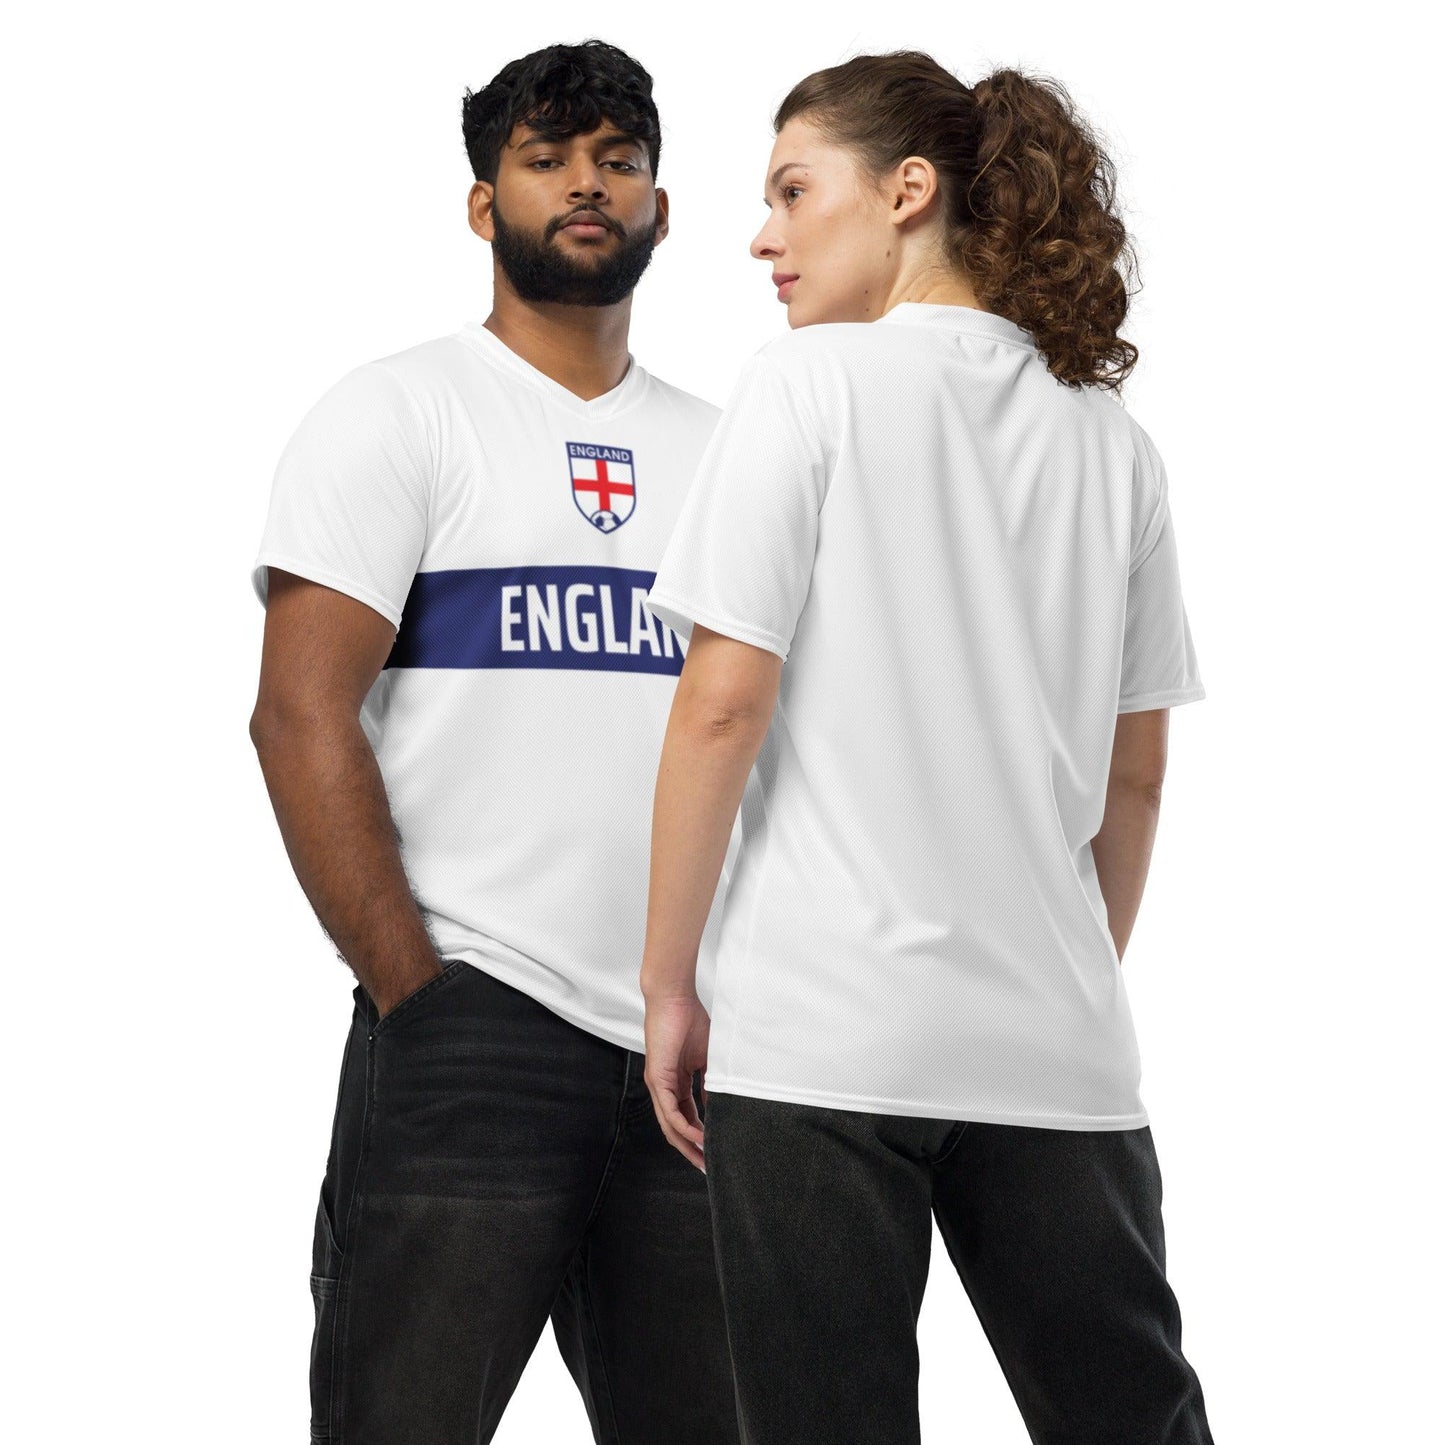 Officieel Engeland Voetbalshirt voor het EK 2024 - Wit en Blauw